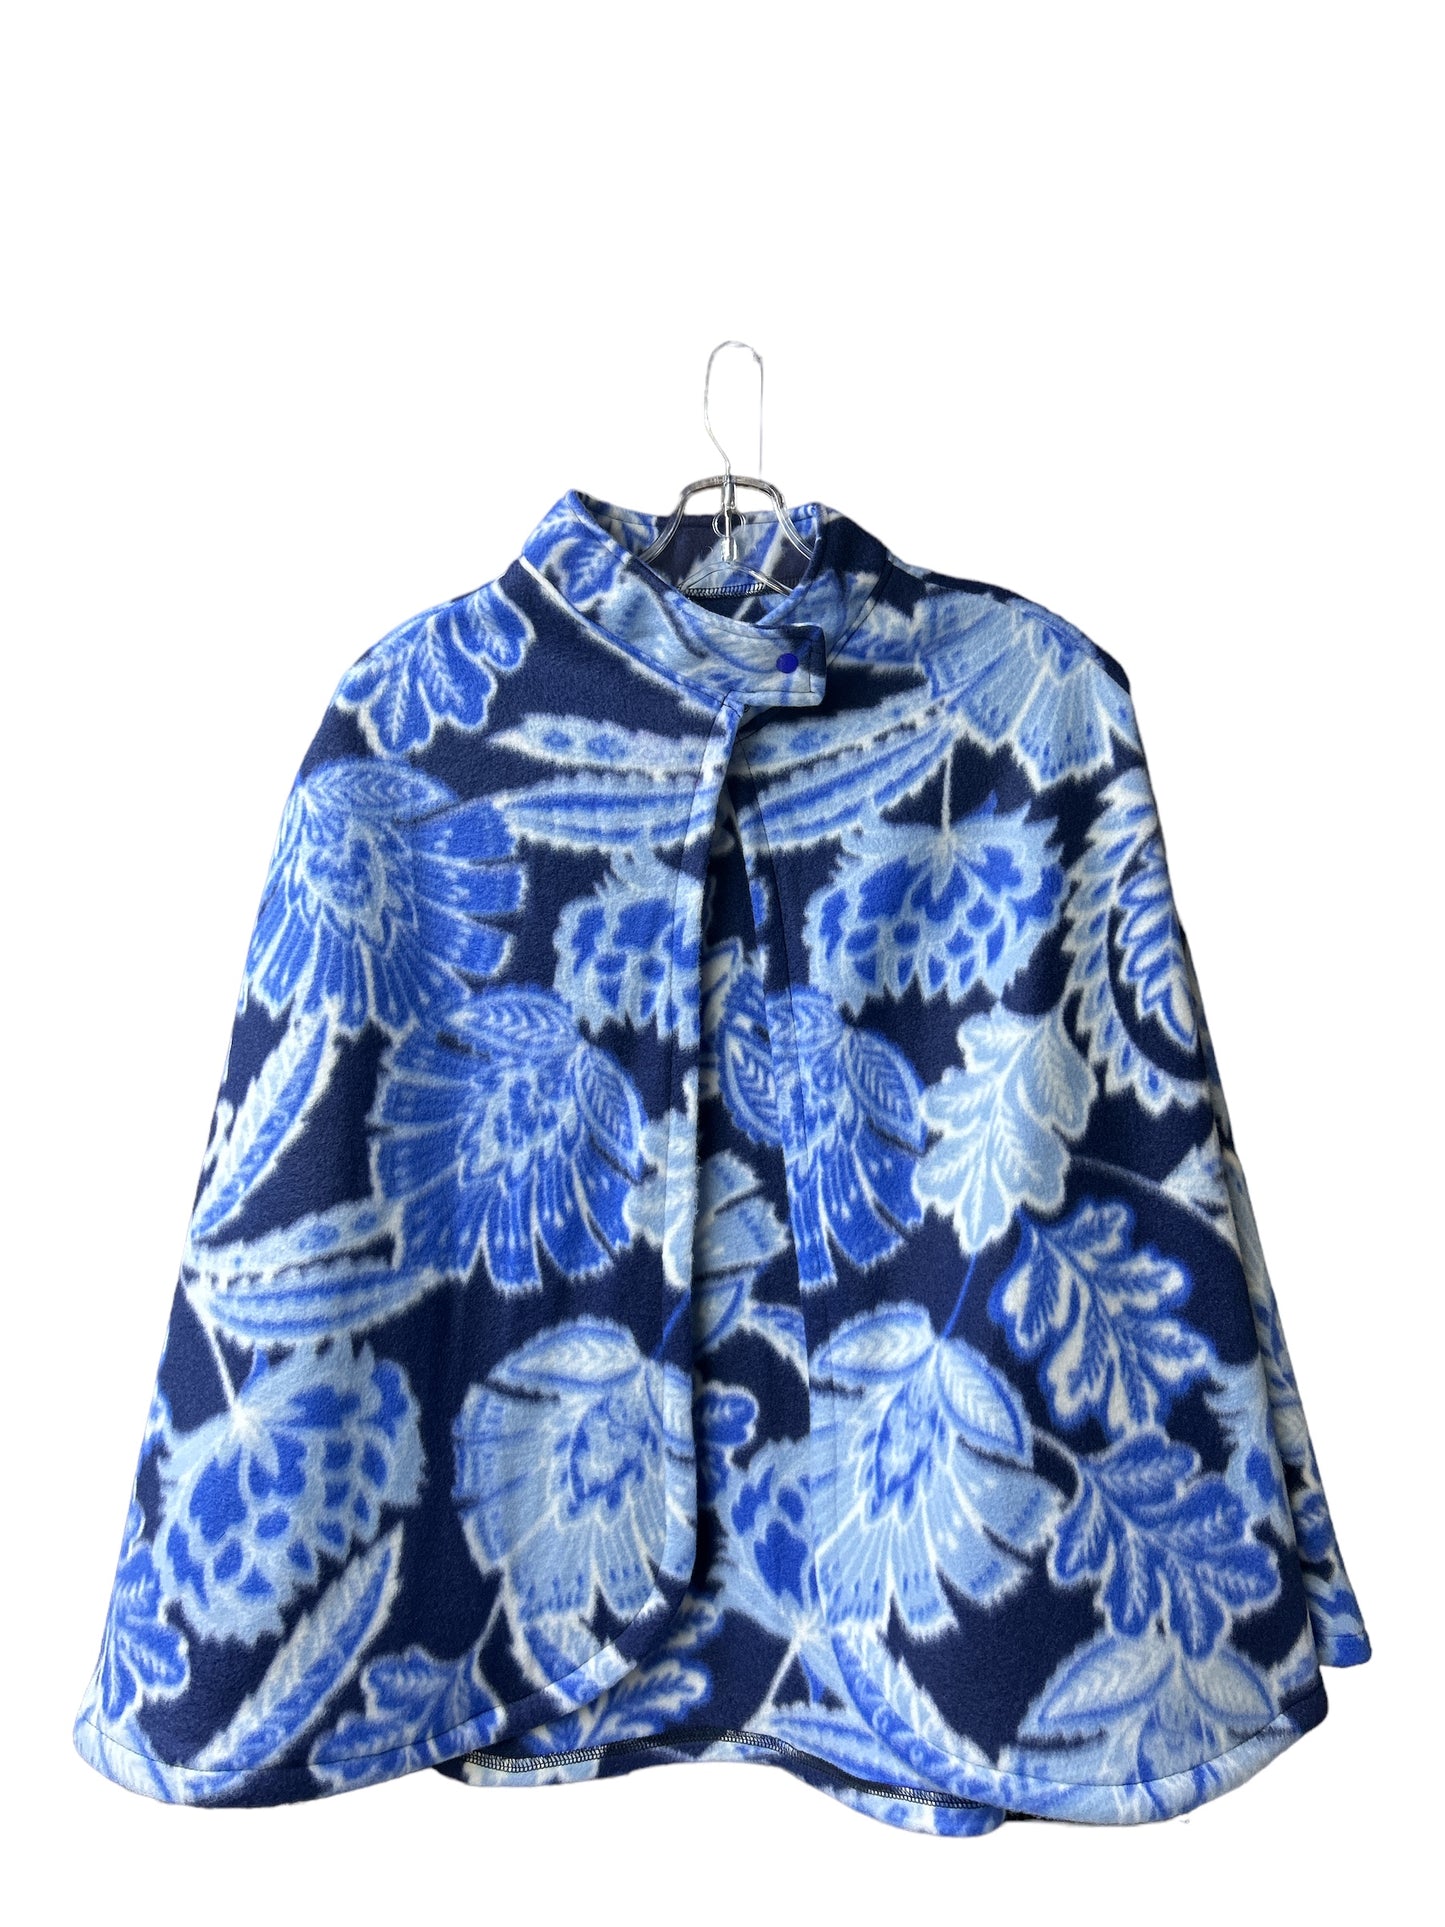 Liseuse fleurs bleues avec col et poches | Mode Québécoise | A3B